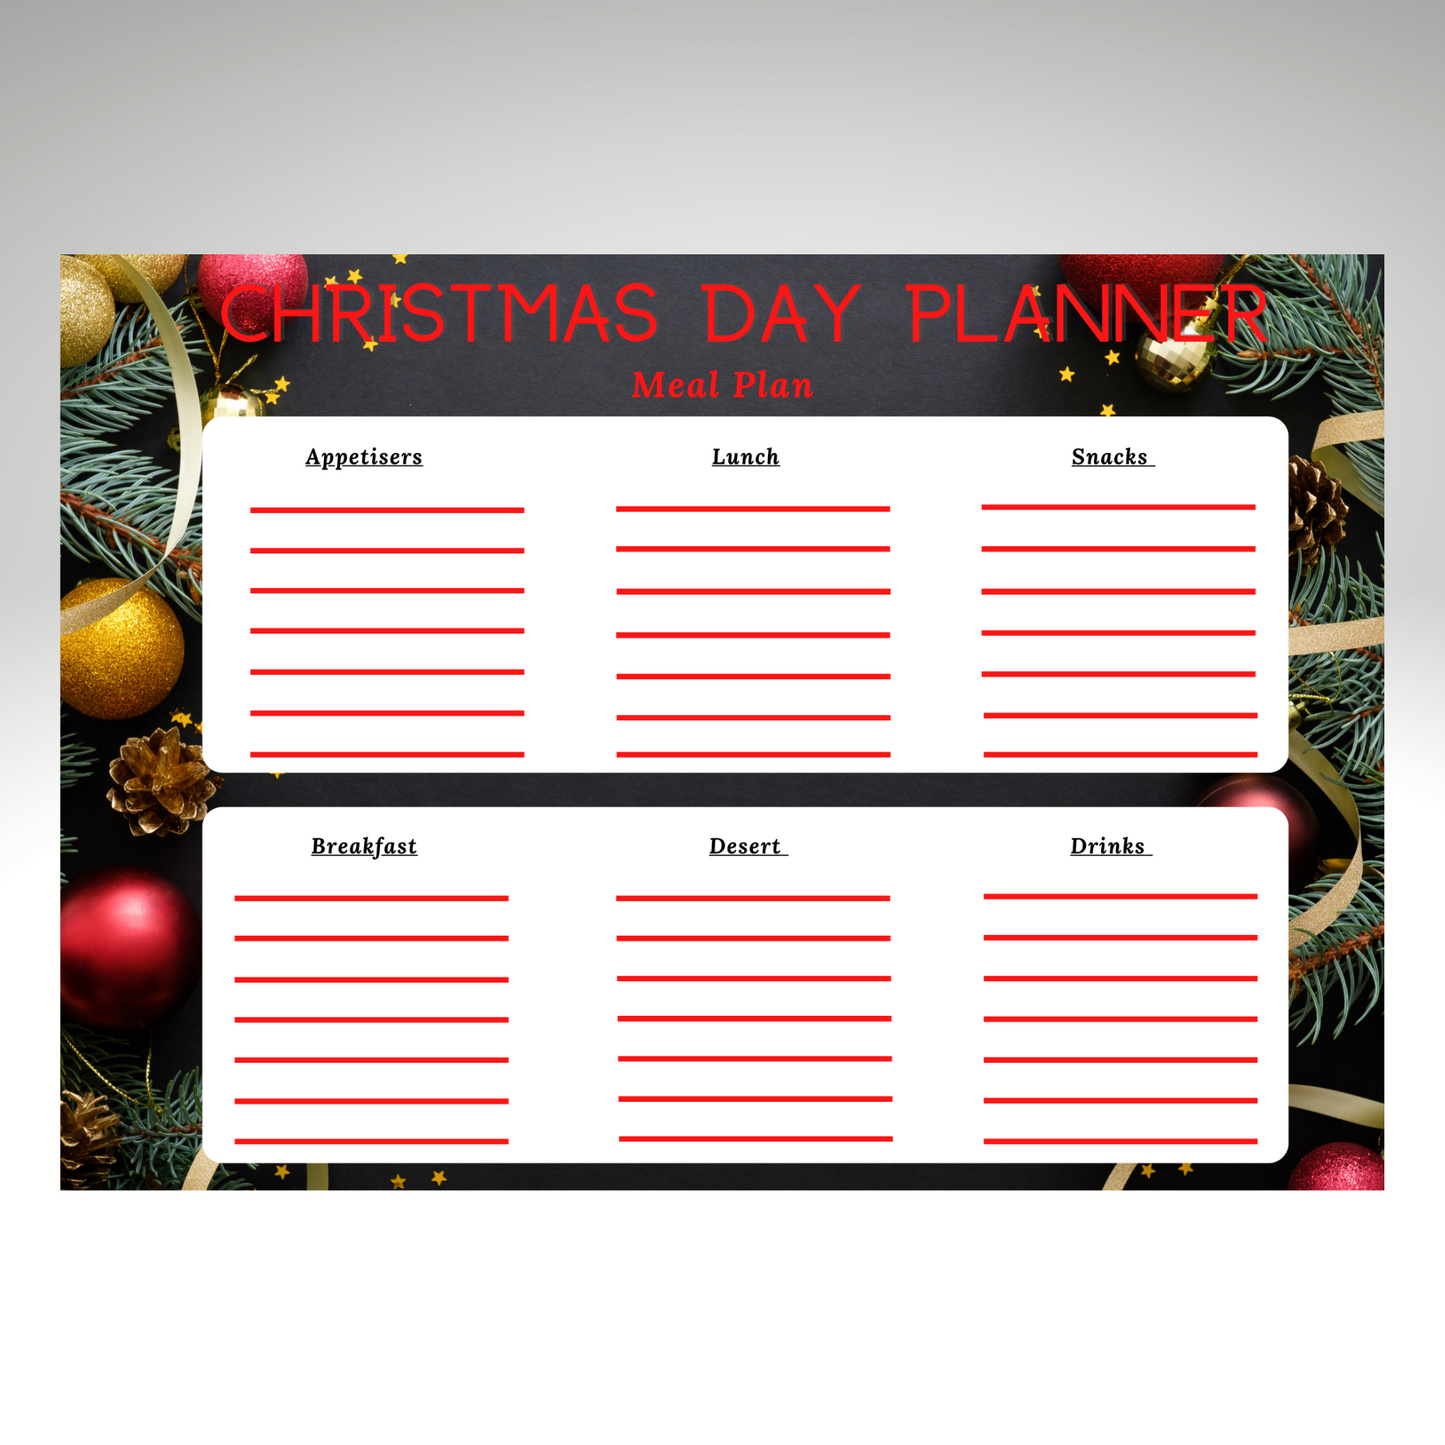 Printable Christmas Planner - Organiser Page 2